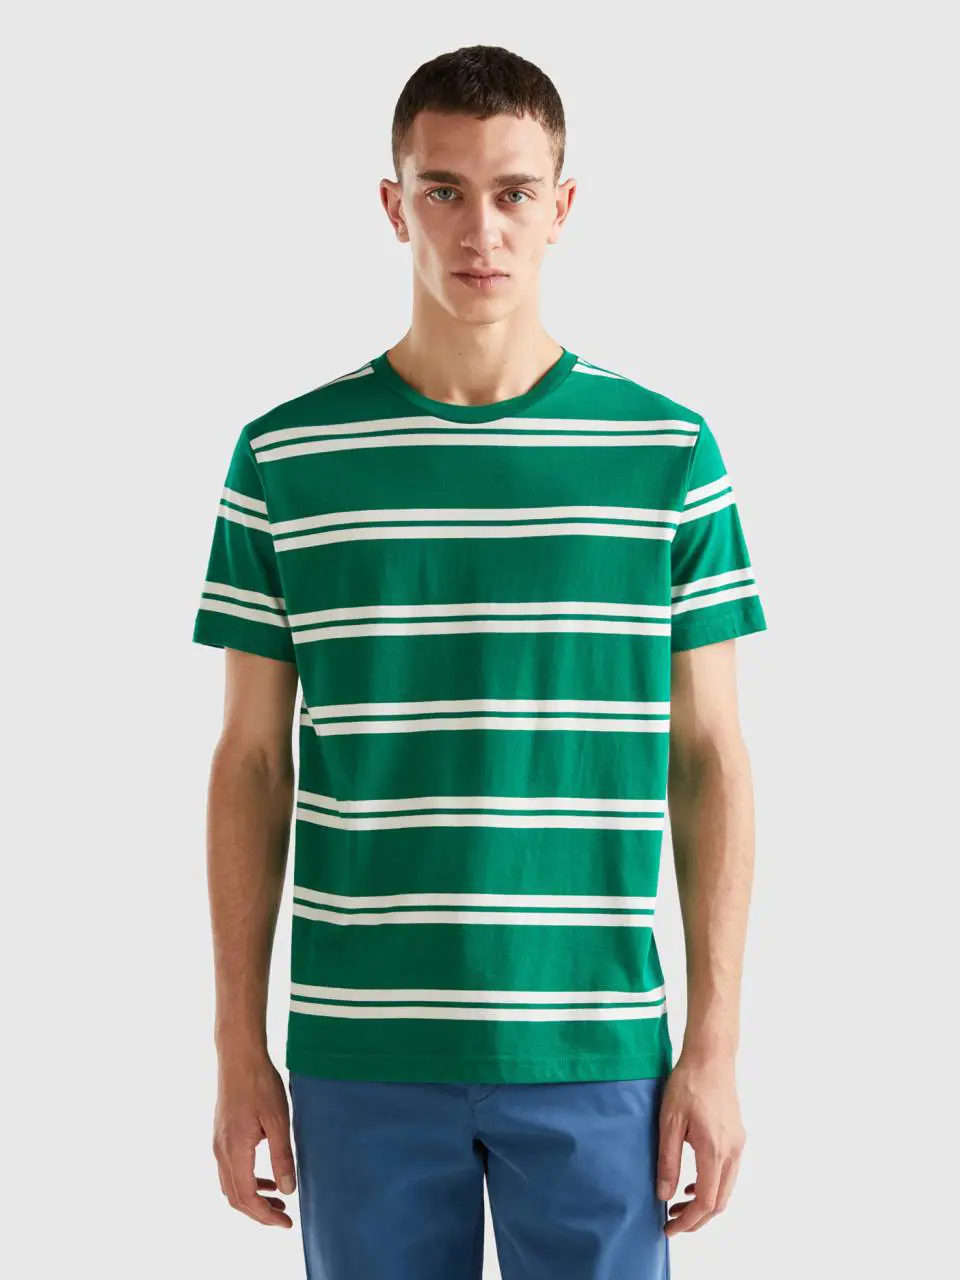 Benetton striped short sleeve t-shirt. 1